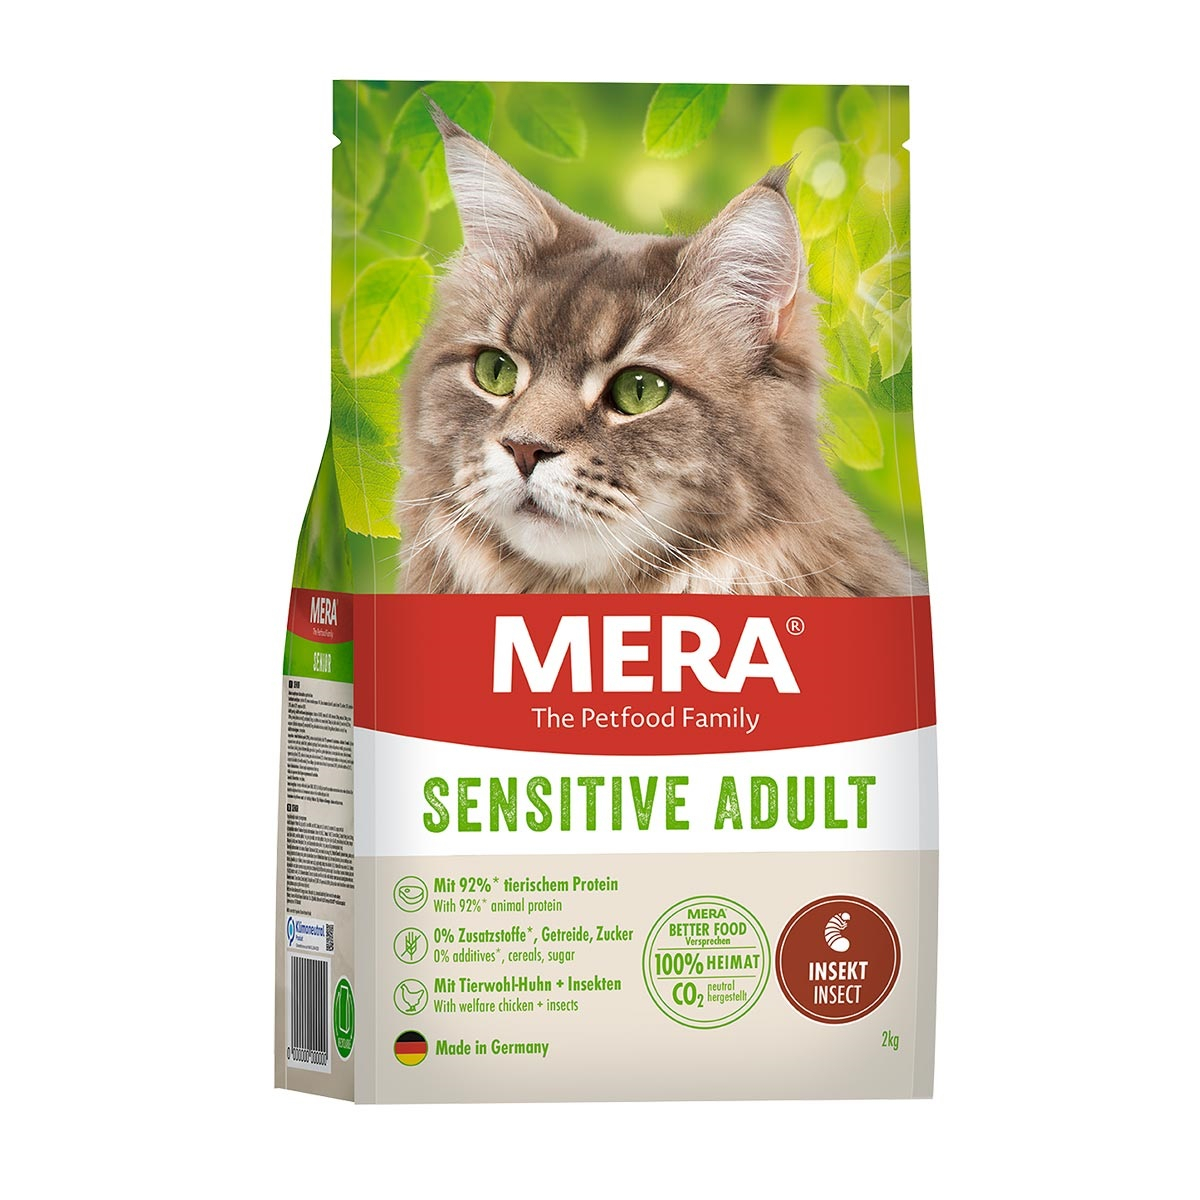 Pienso MERA Sensitive Adult para gatos sensibles con insectos